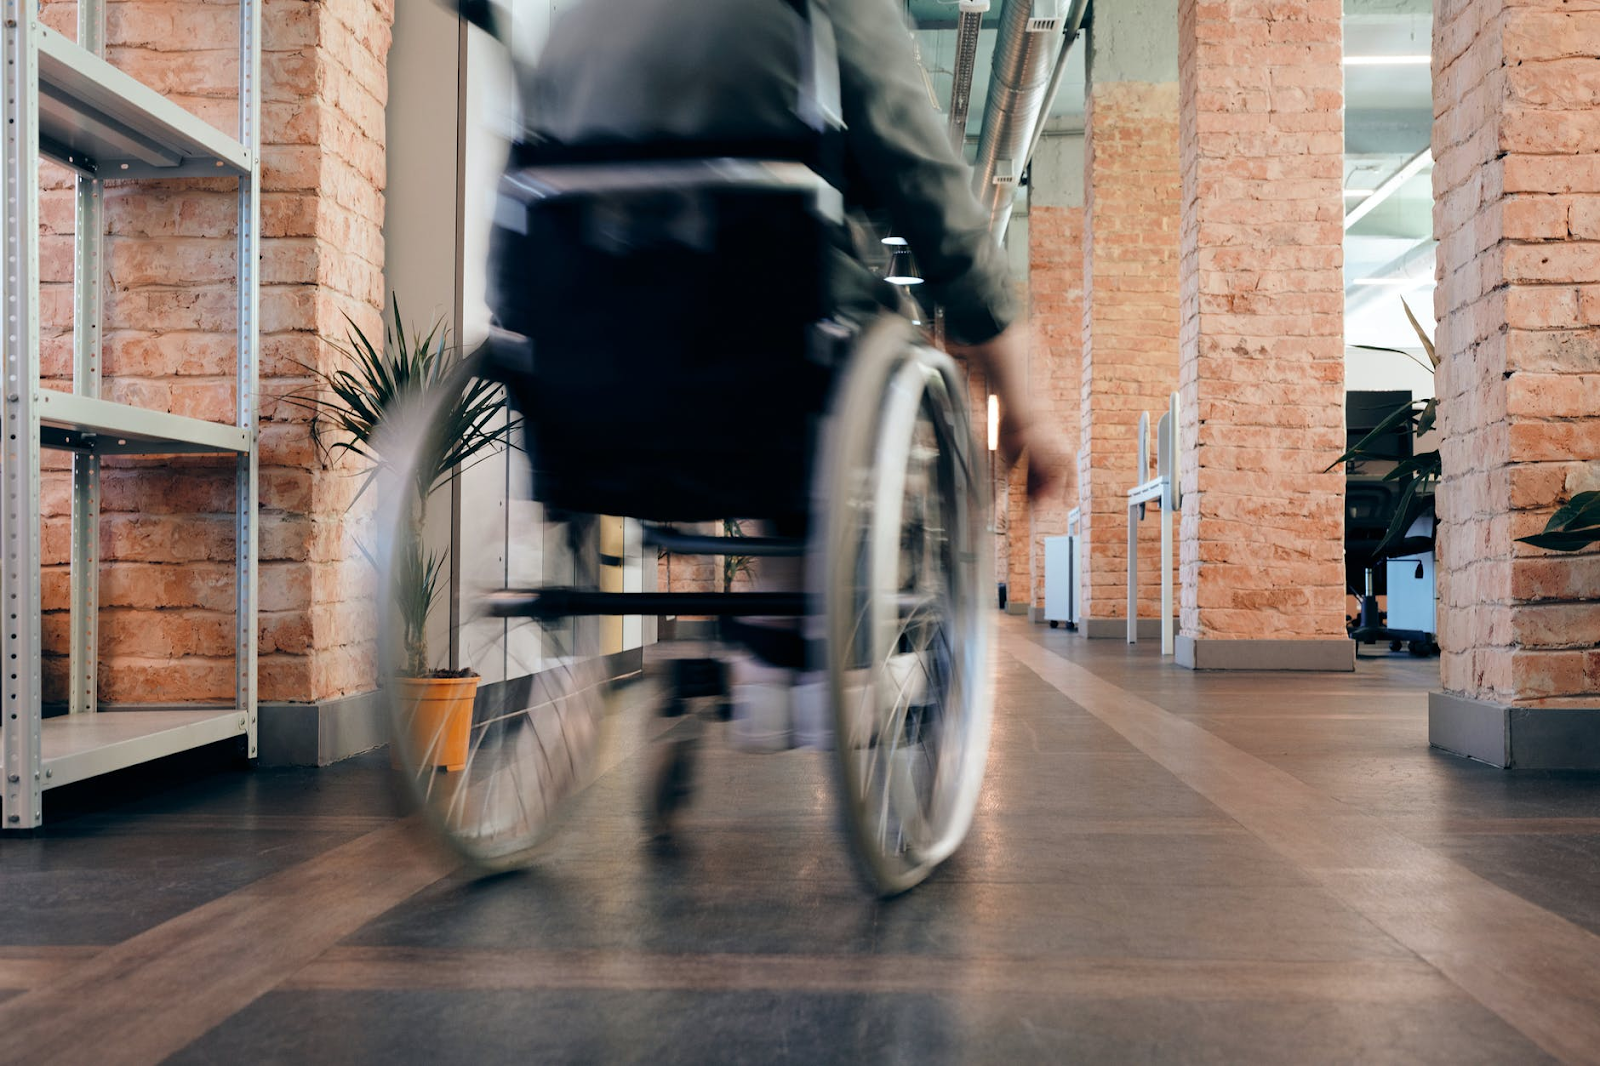 A person using a wheelchair